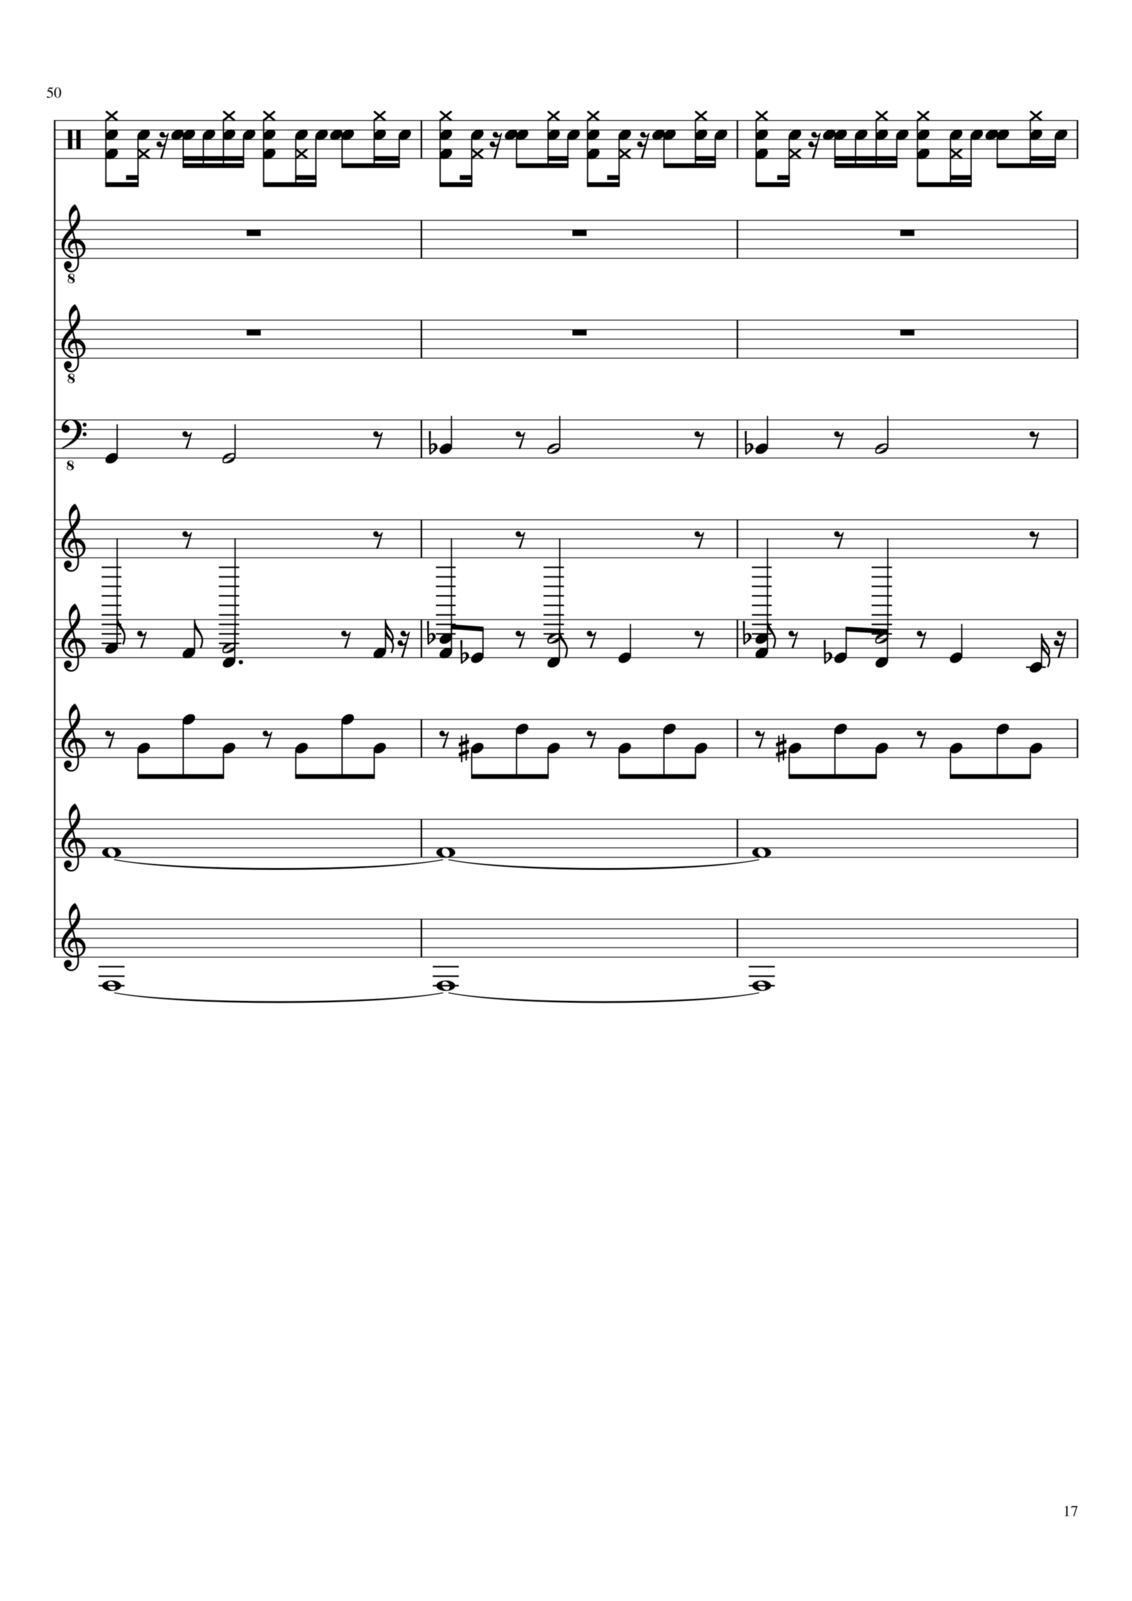 Utro polinyi slide, Image 61